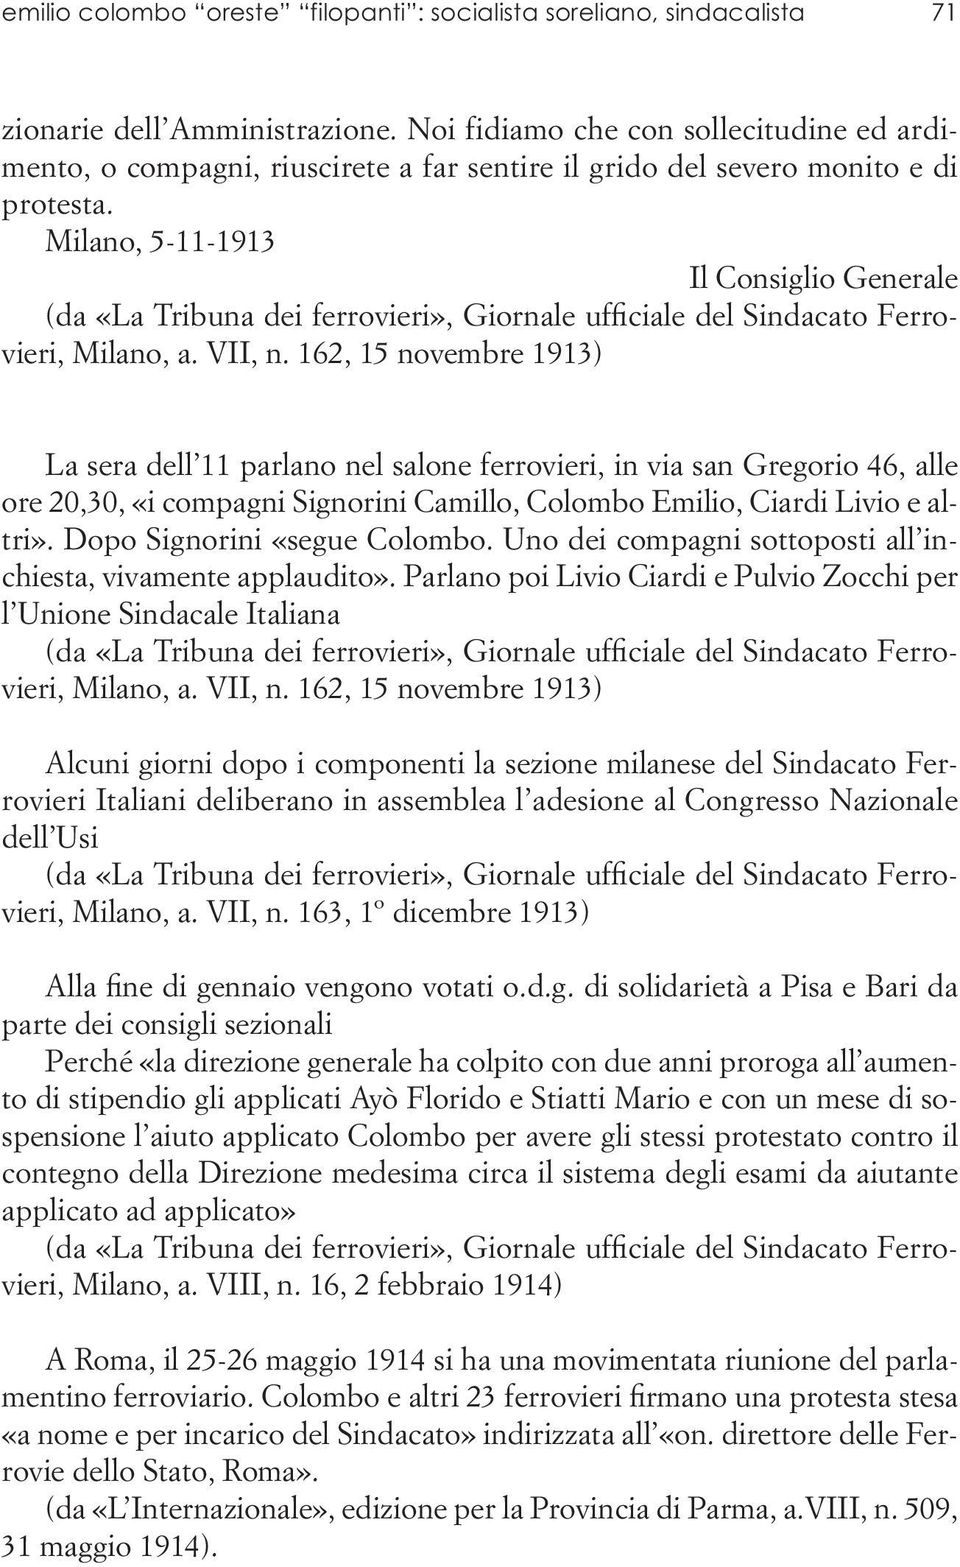 Milano, 5-11-1913 Il Consiglio Generale (da «La Tribuna dei ferrovieri», Giornale ufficiale del Sindacato Ferrovieri, Milano, a. VII, n.